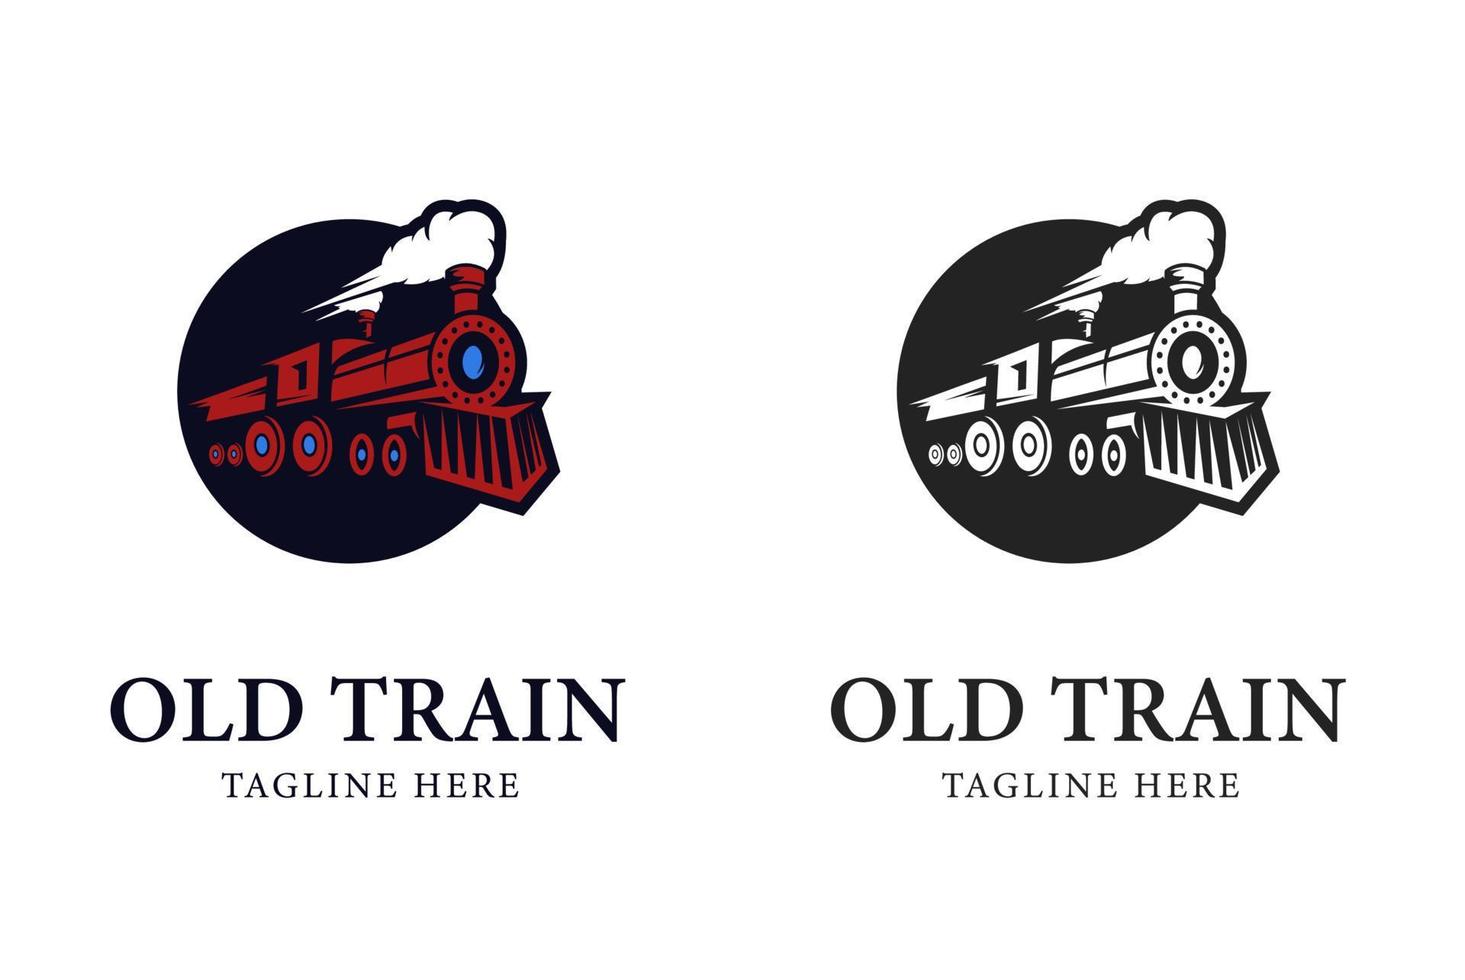 Zug-Logos. Illustration des alten Zuges mit flachem Kreisformvektor vektor